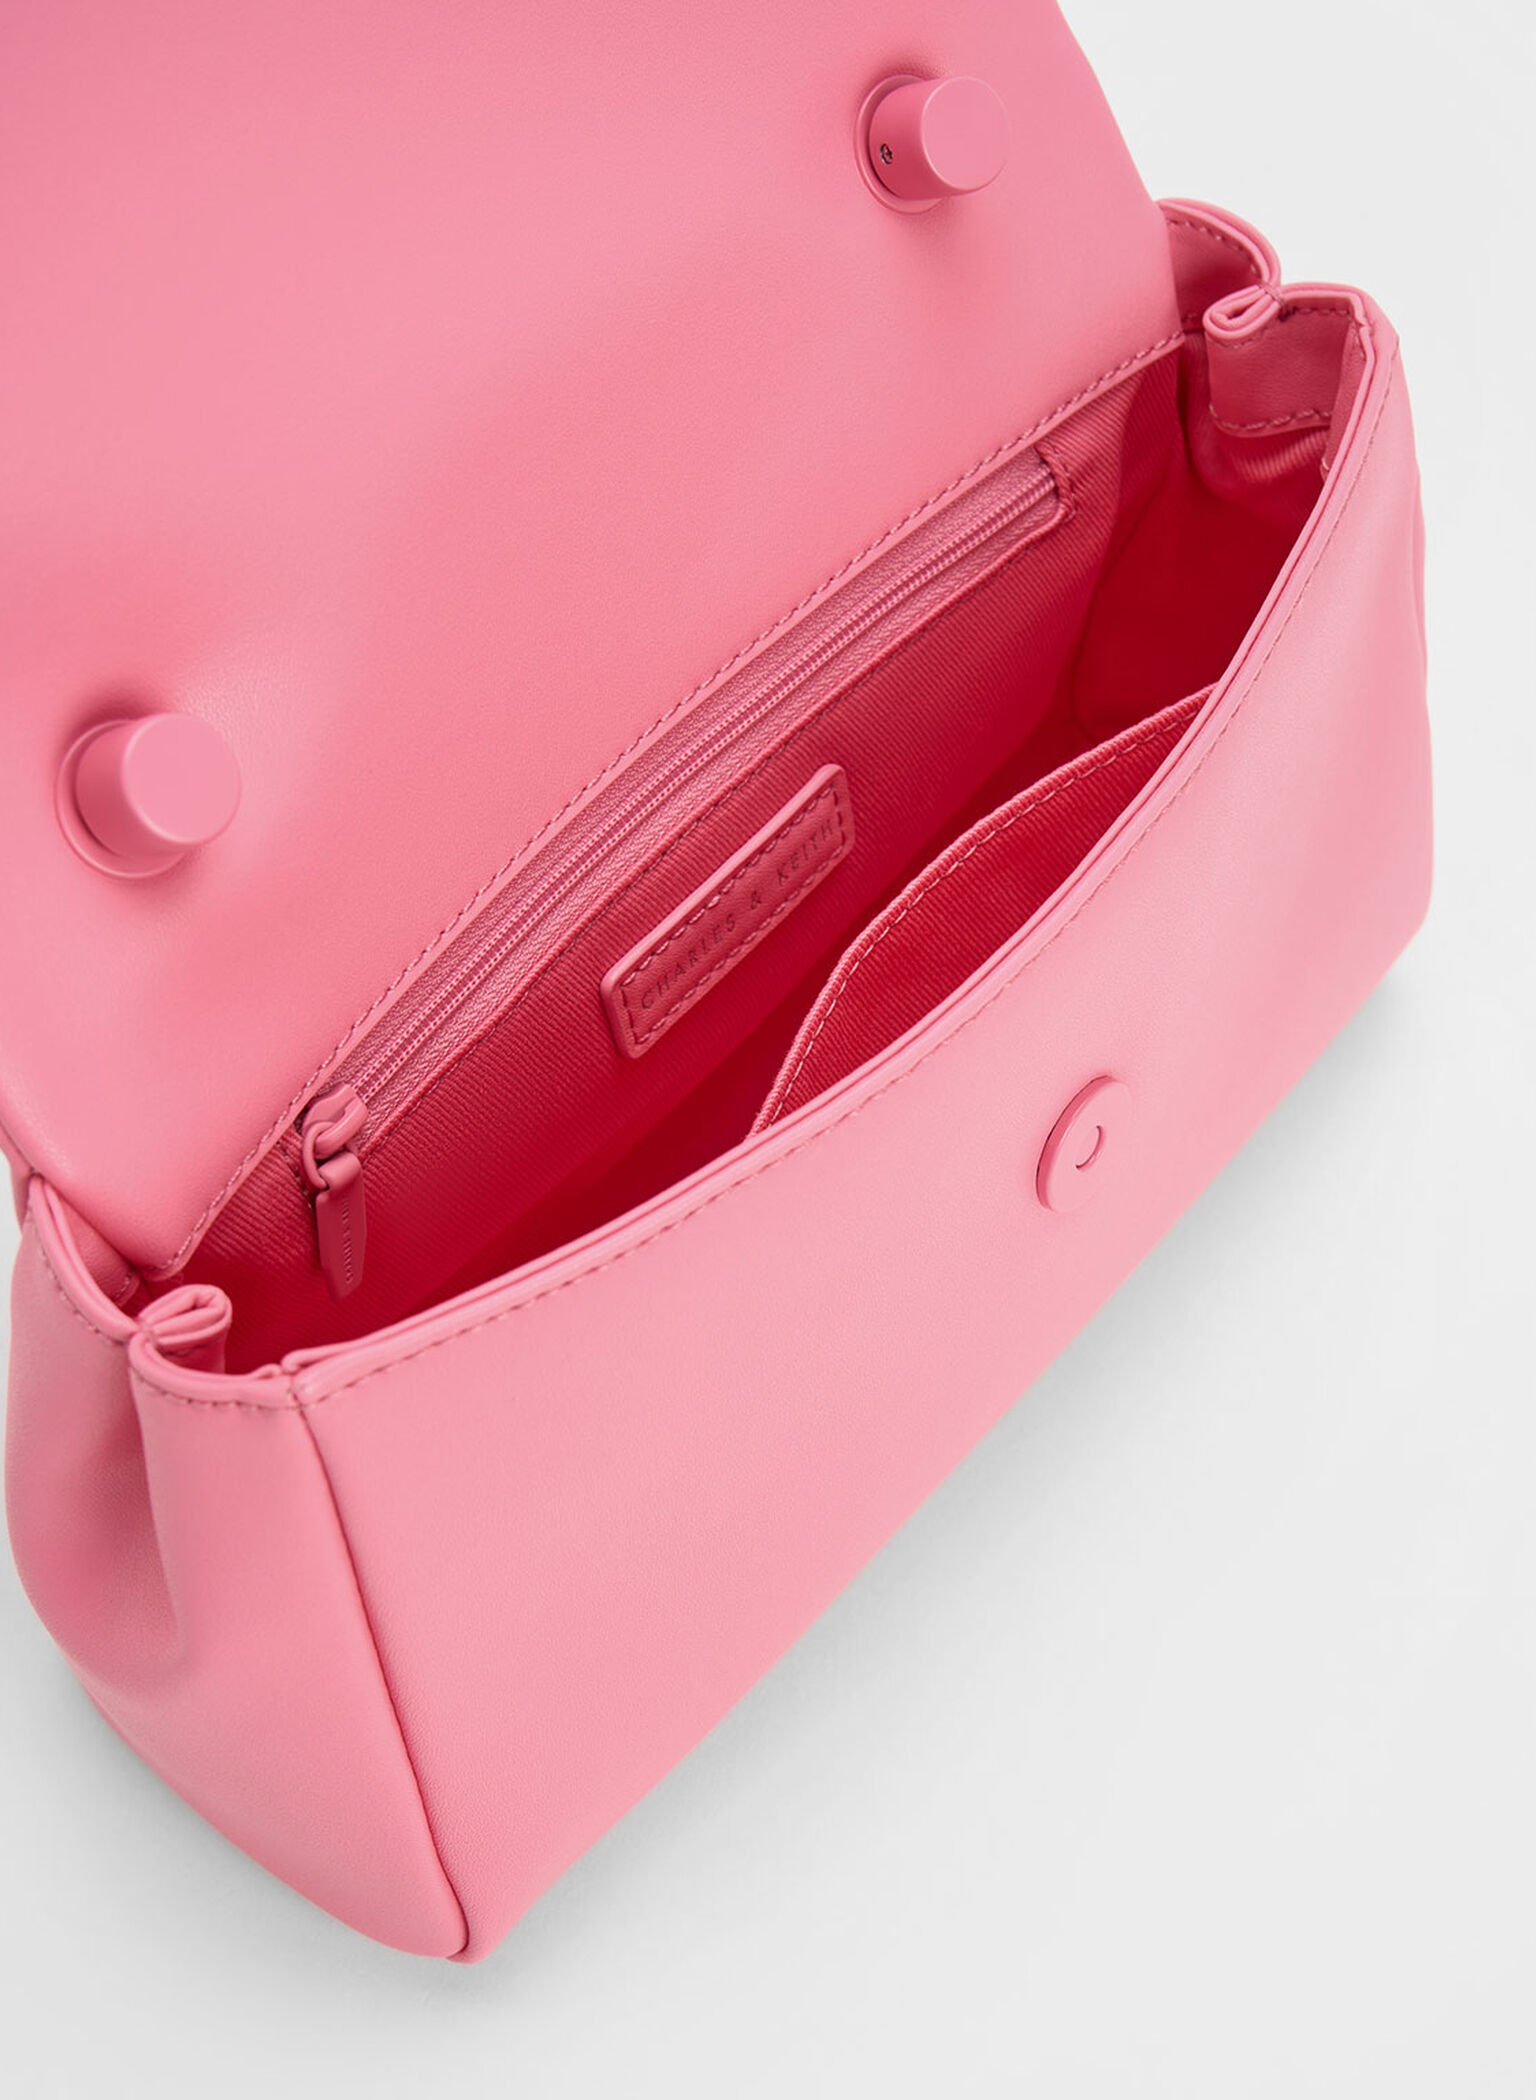 Curved Handle Shoulder Bag, Pink, hi-res